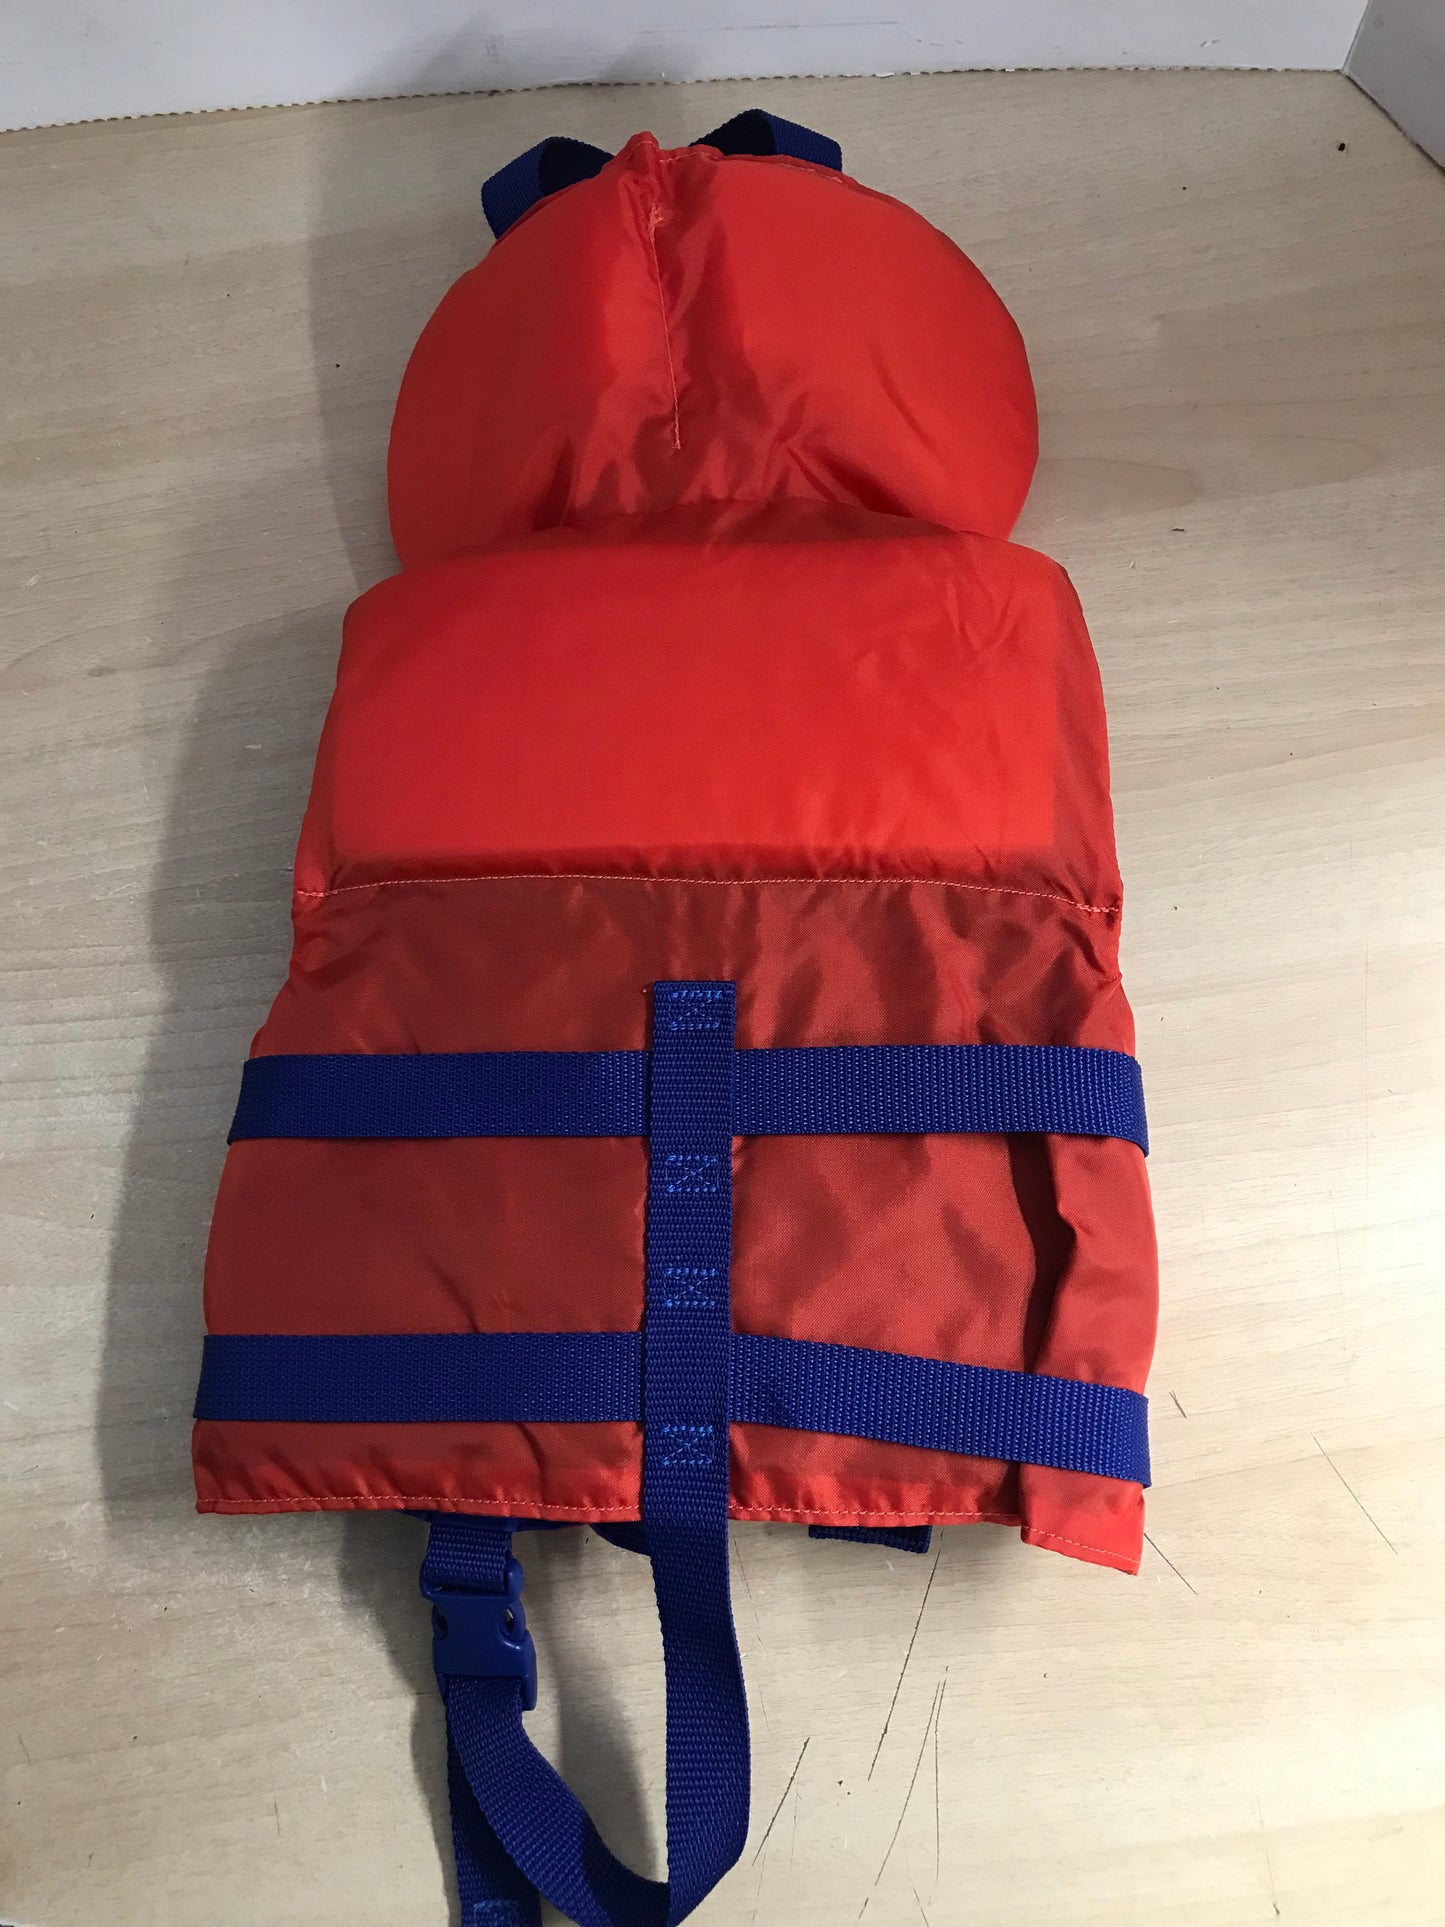 Life Jacket Child Size 20-30 lb Infant Buoy o Boy Orange Blue Excellent